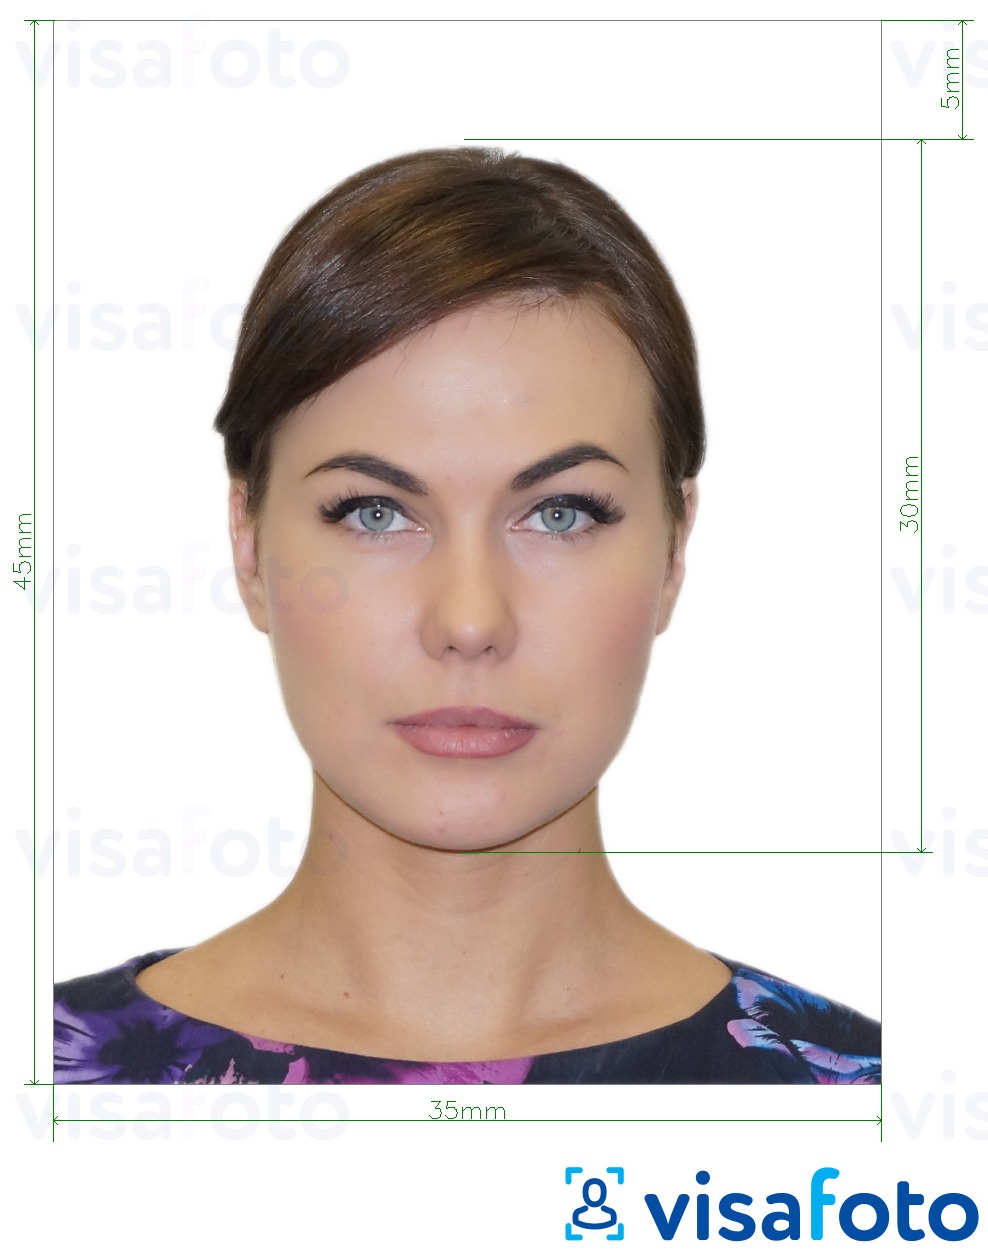 Contoh dari foto untuk Visa Rusia melalui VFS Global 35x45 mm dengan ukuran spesifikasi yang tepat